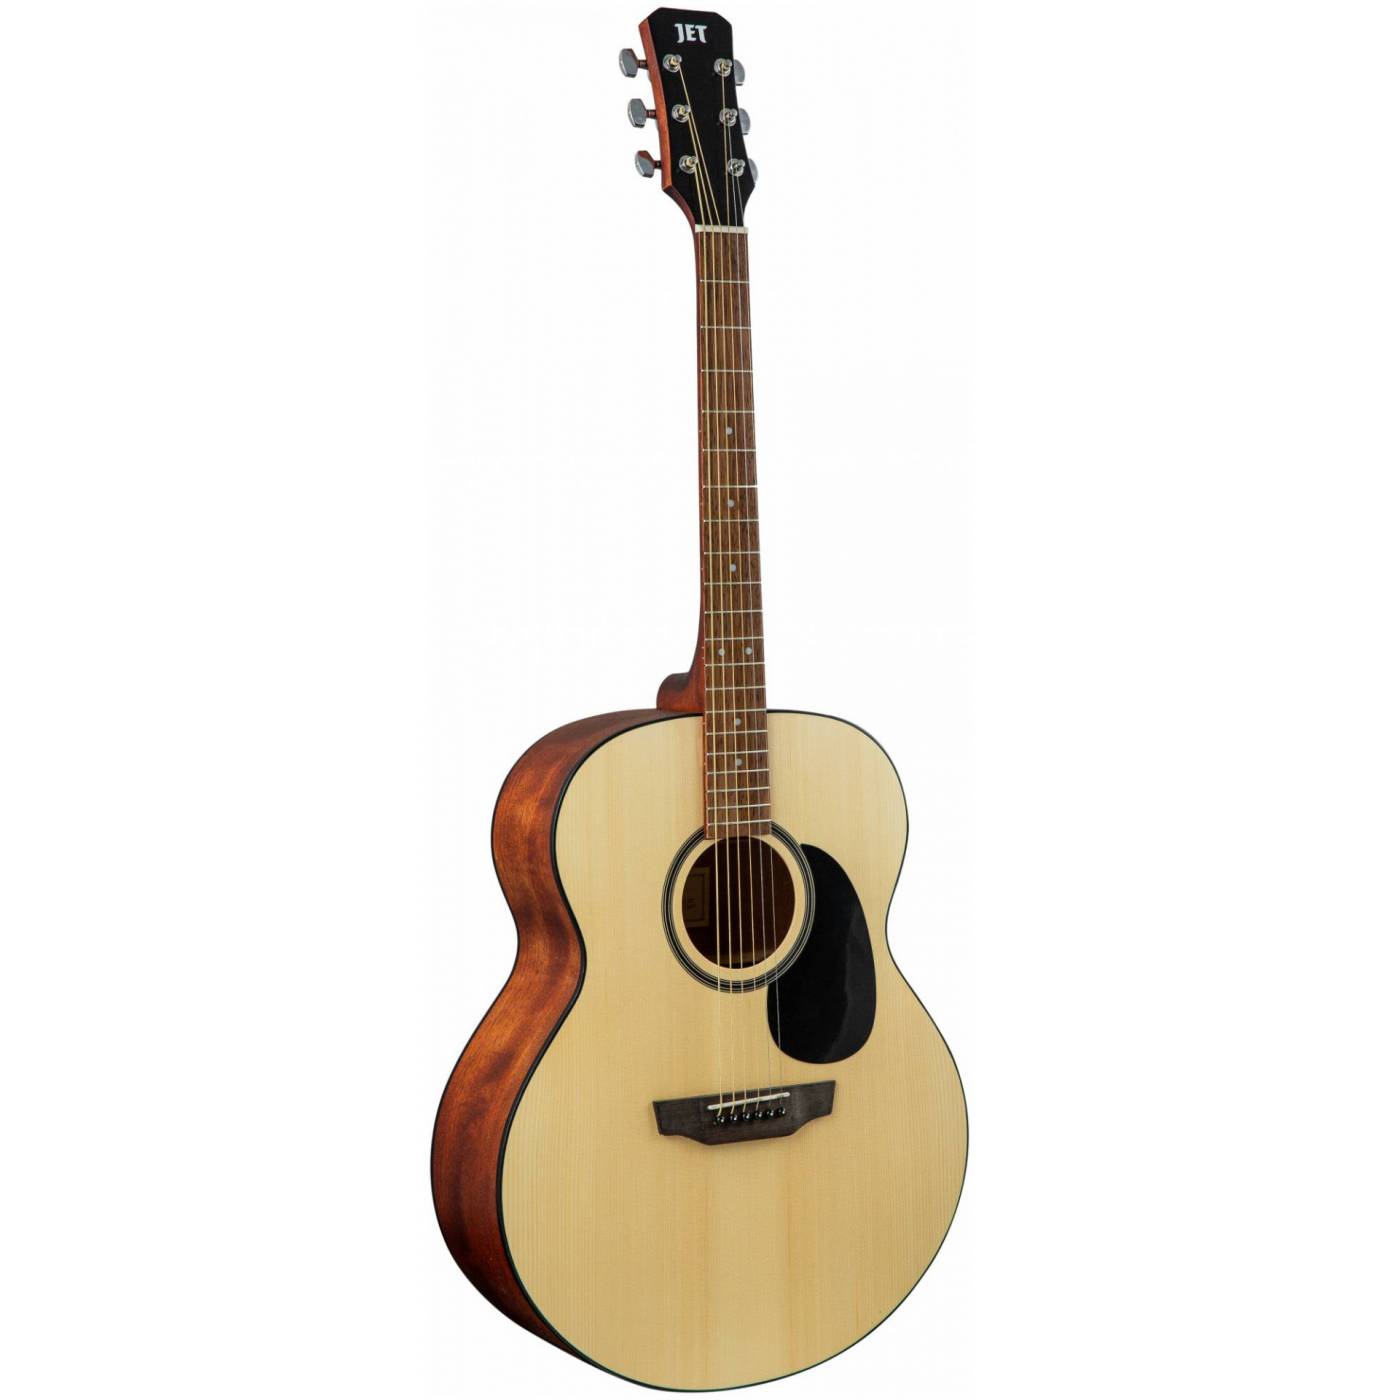 JET JJ-250 OP - акустическая гитара, джамбо, верхняя дека - ель, корпус - красное дерево, отделка -